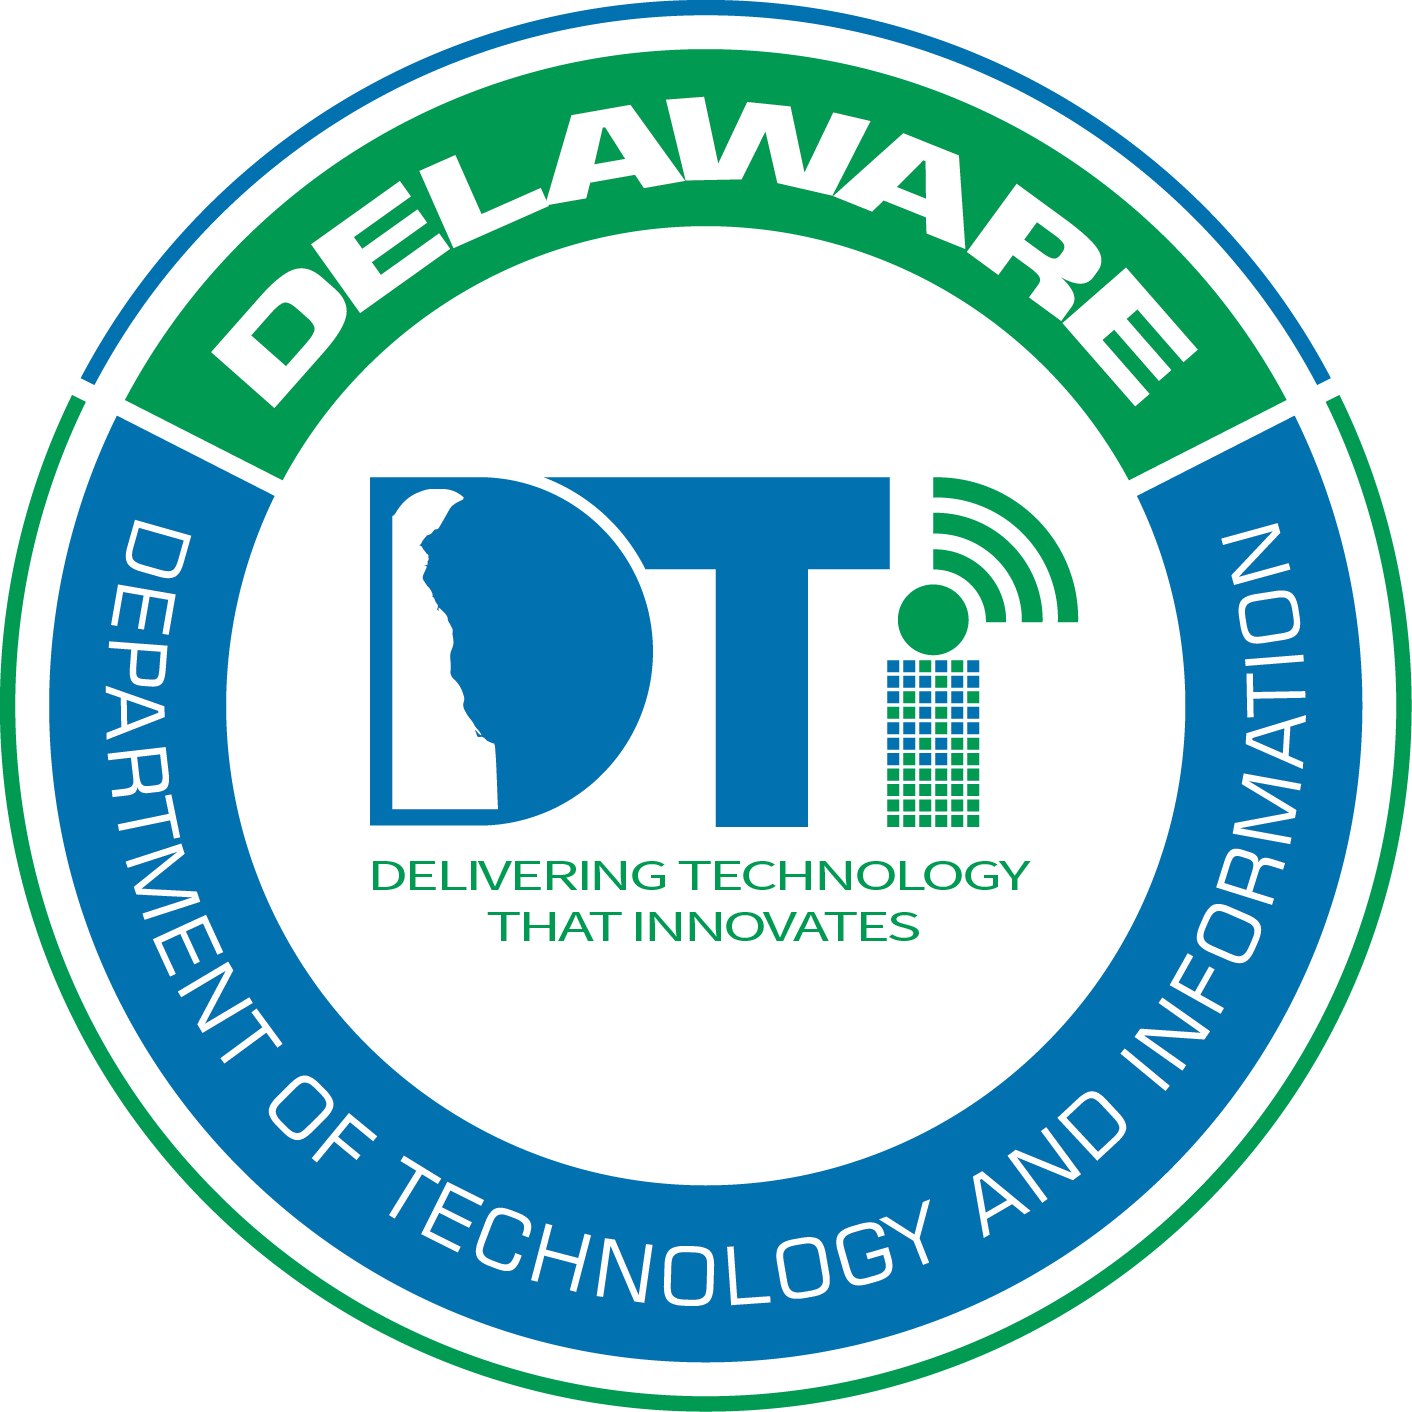 Delaware Broadband Office seal